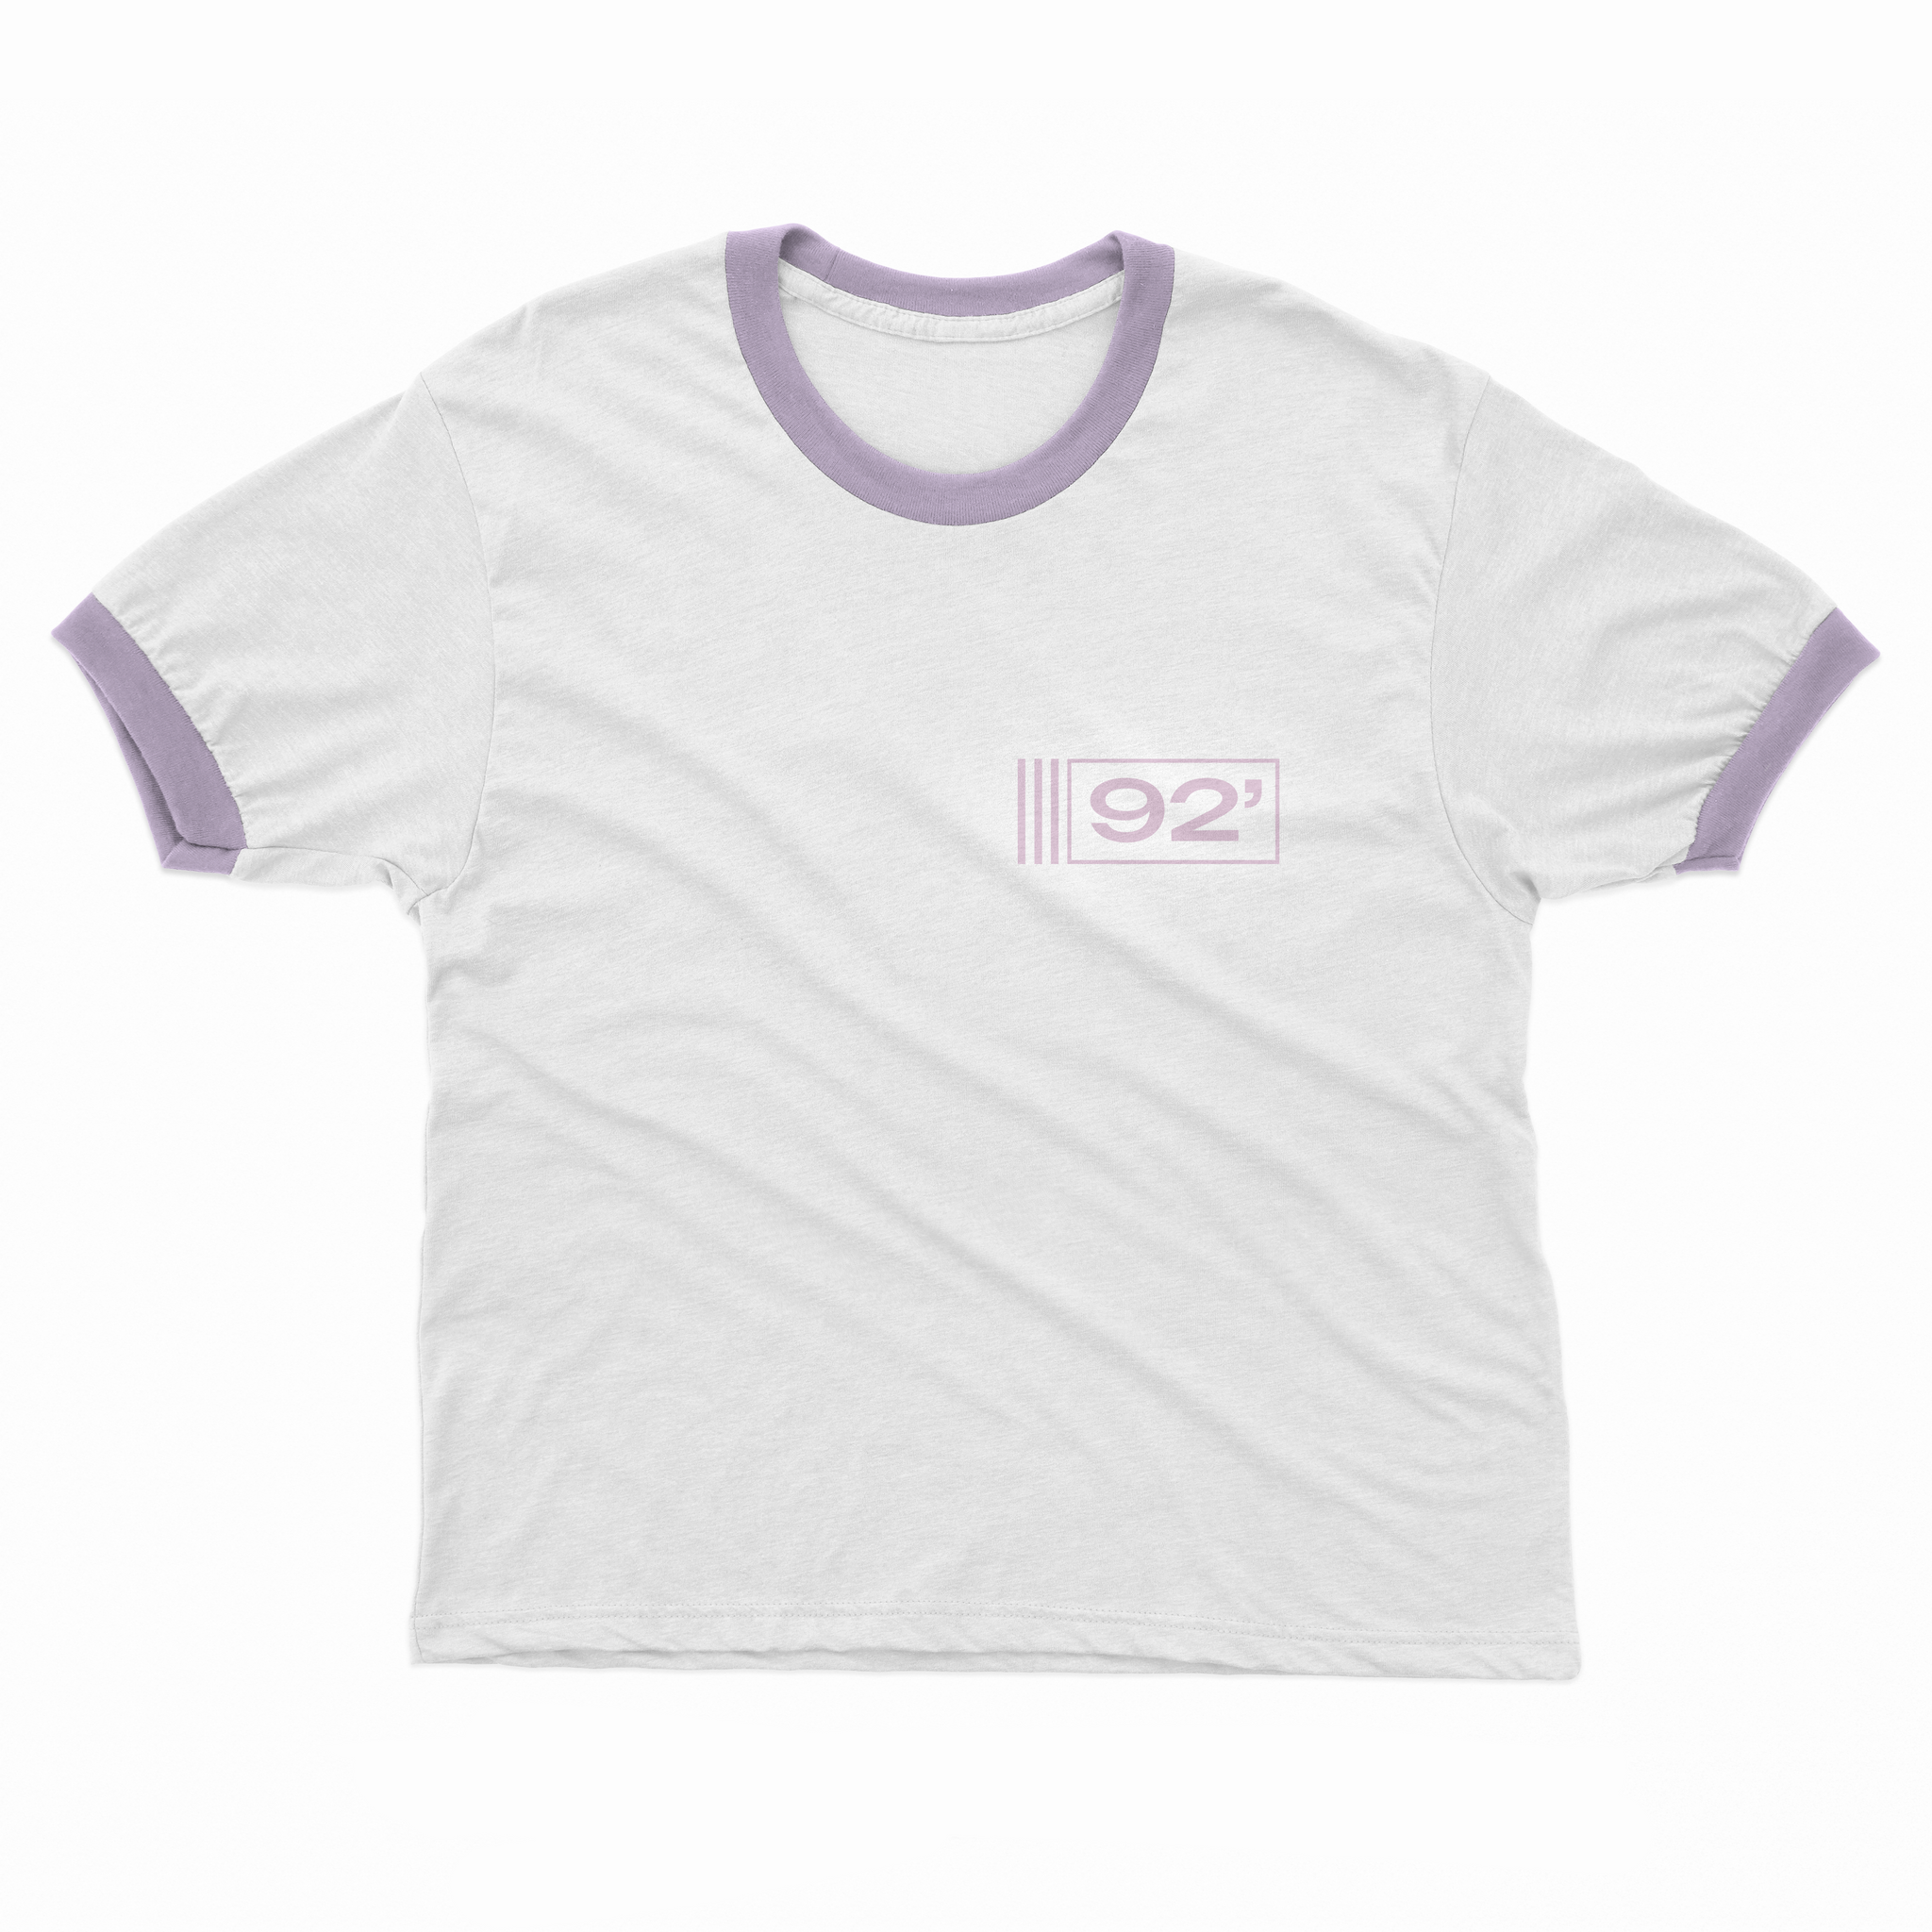 Tshirt 92’ (Women)